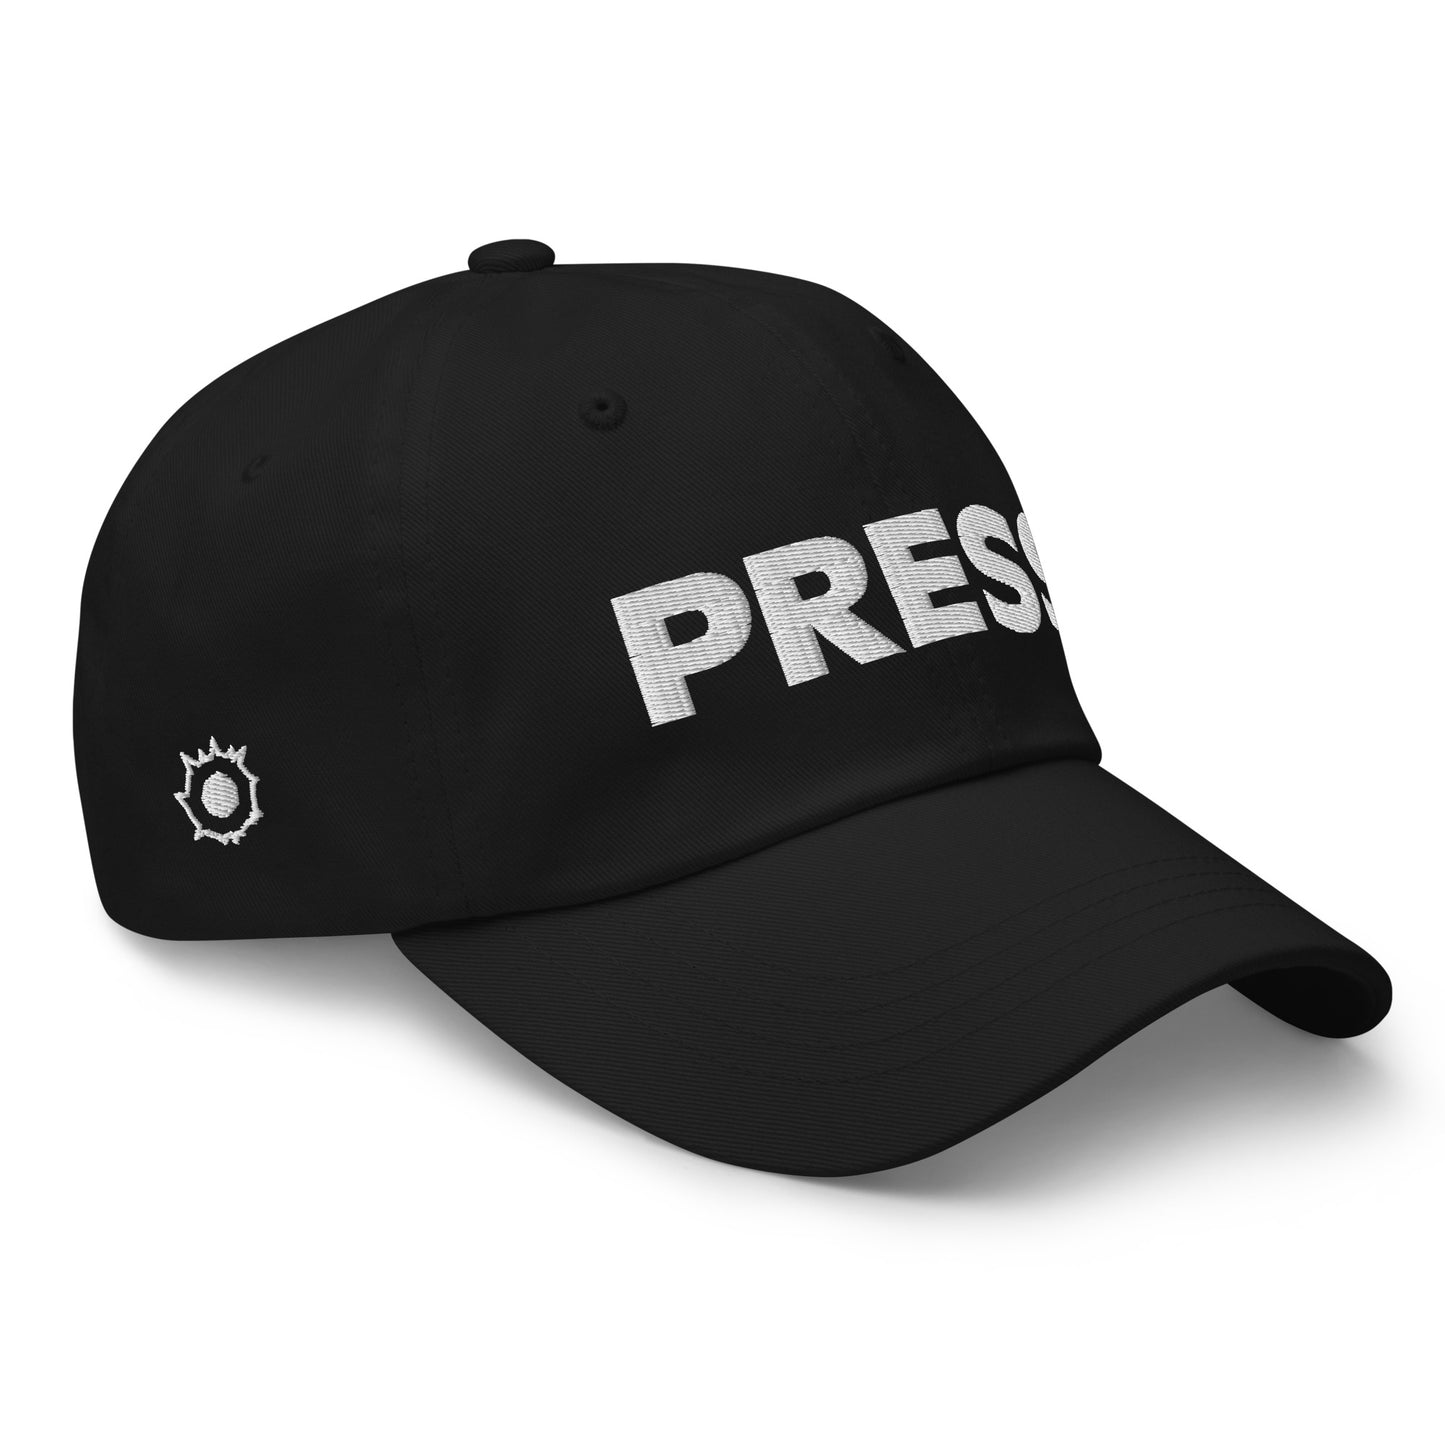 [REPRINT] 'GREAT JONES STREET' hat